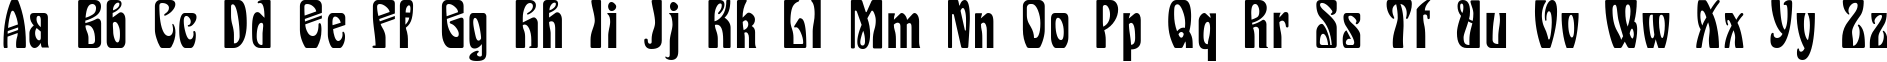 Пример написания английского алфавита шрифтом Epoque